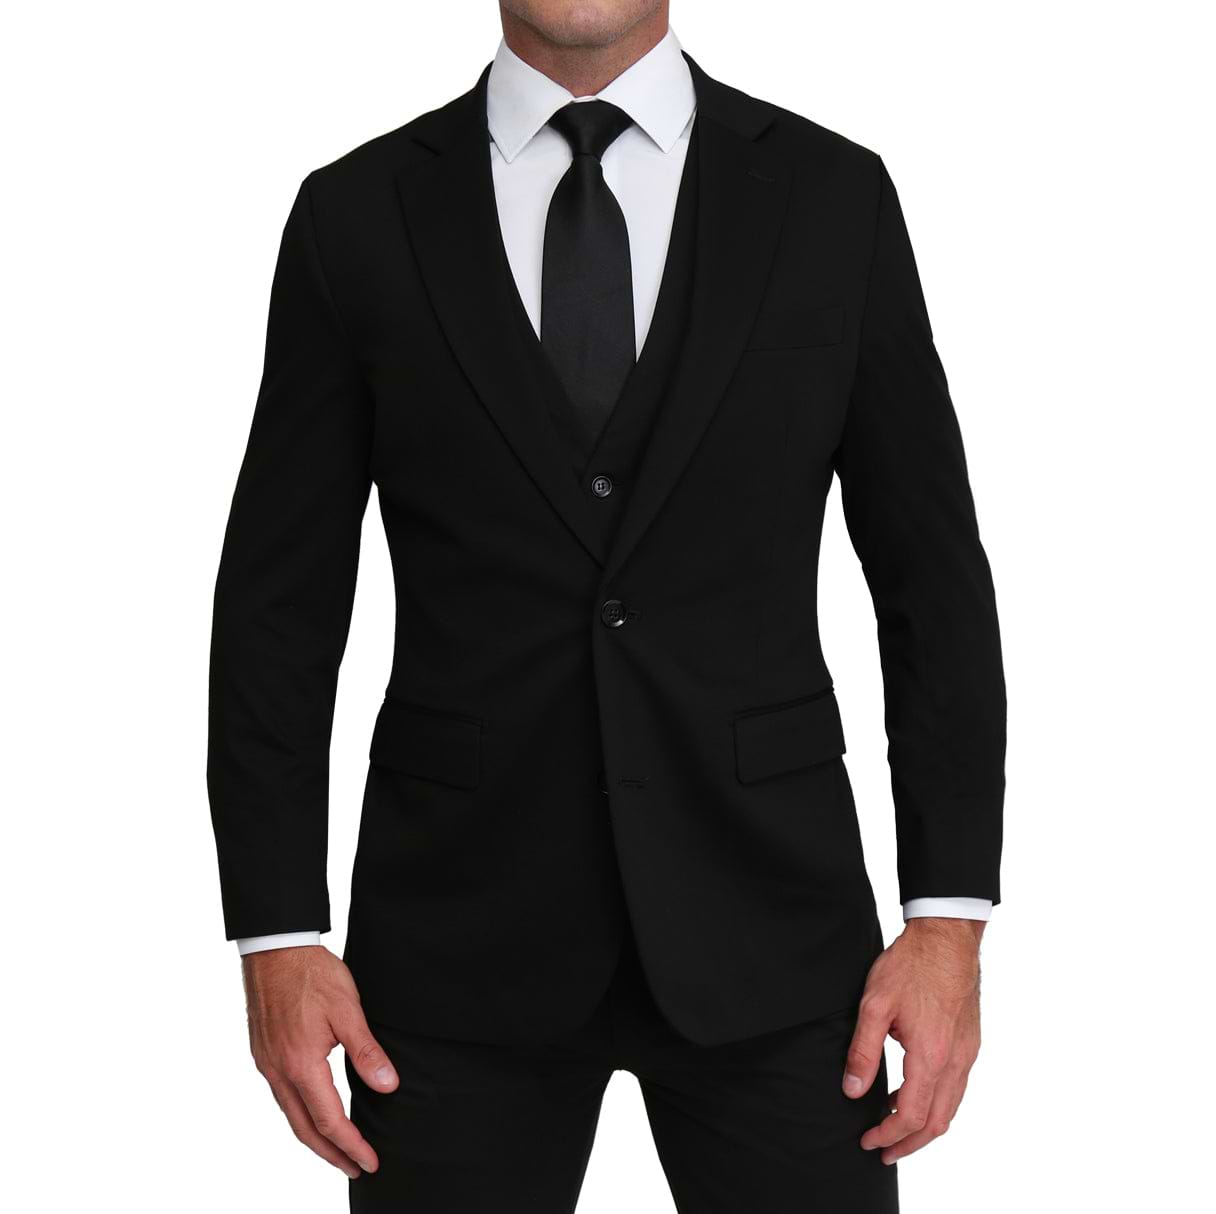 black suit black shirt